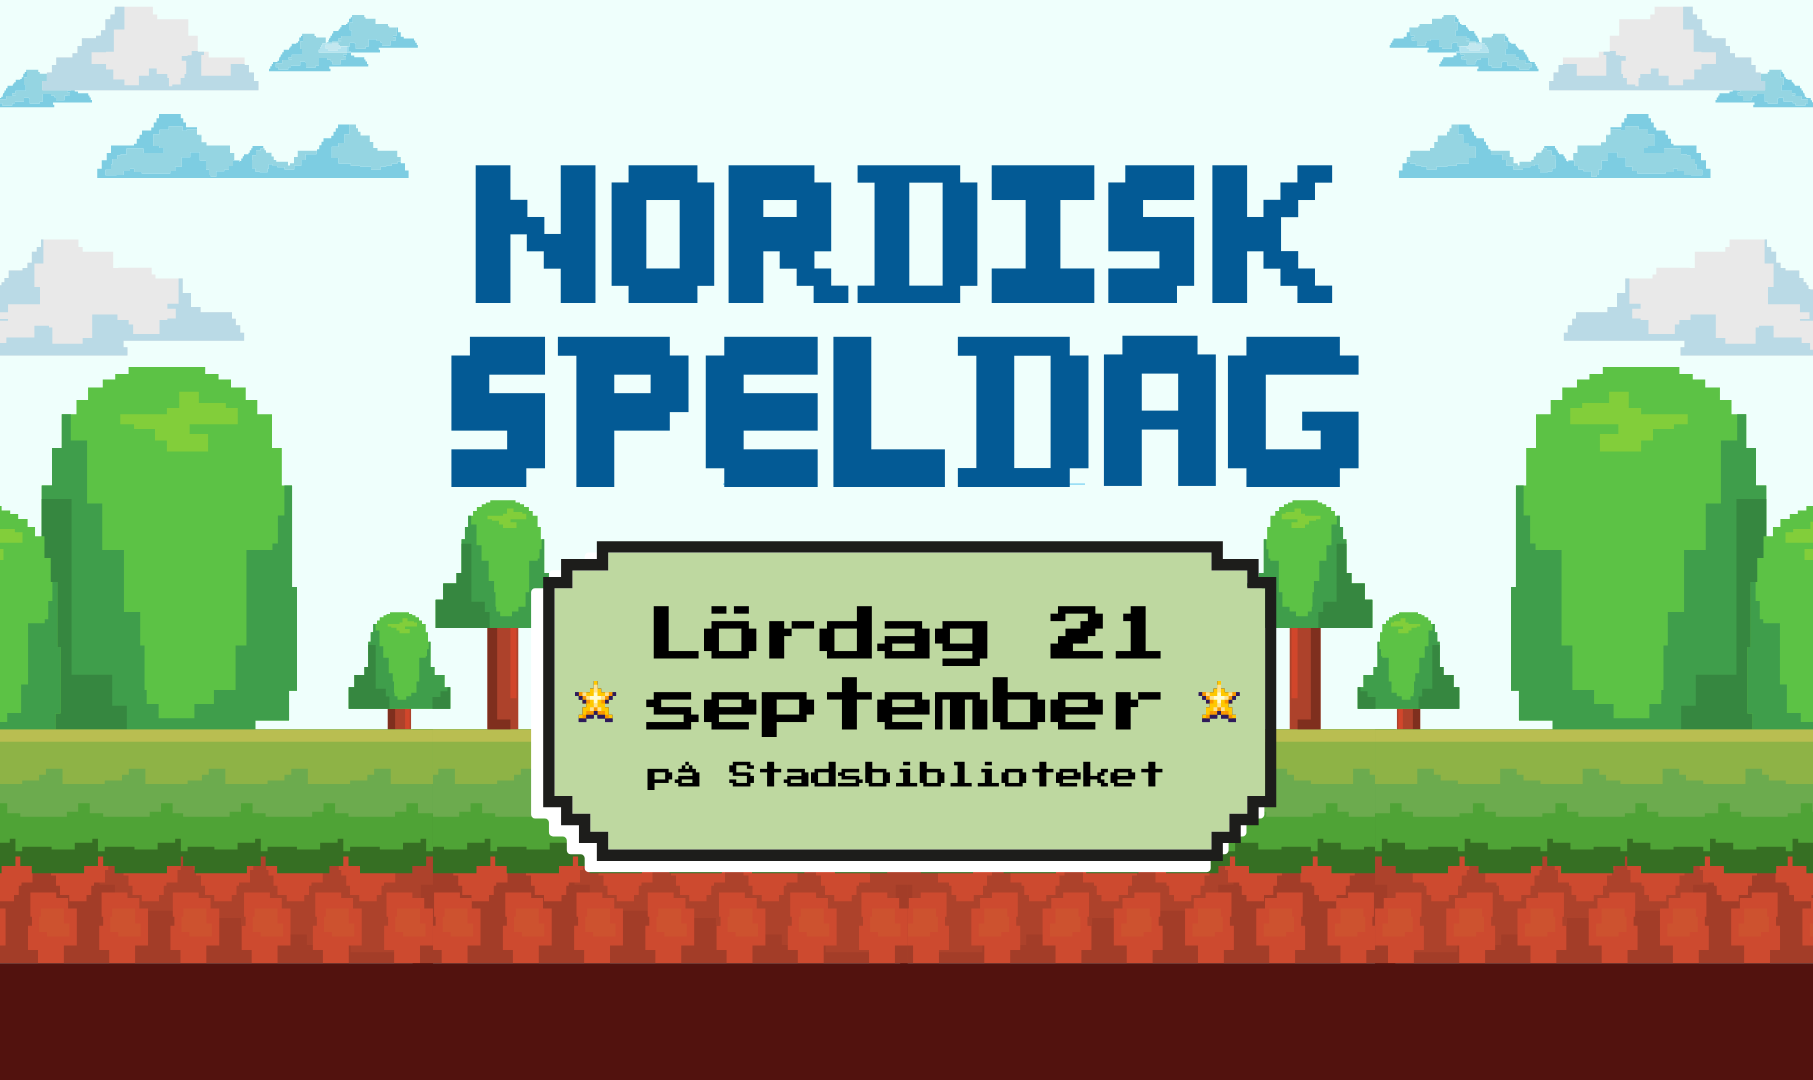 Bildbeskrivning saknas för evenemanget: Nordisk speldag 21 september